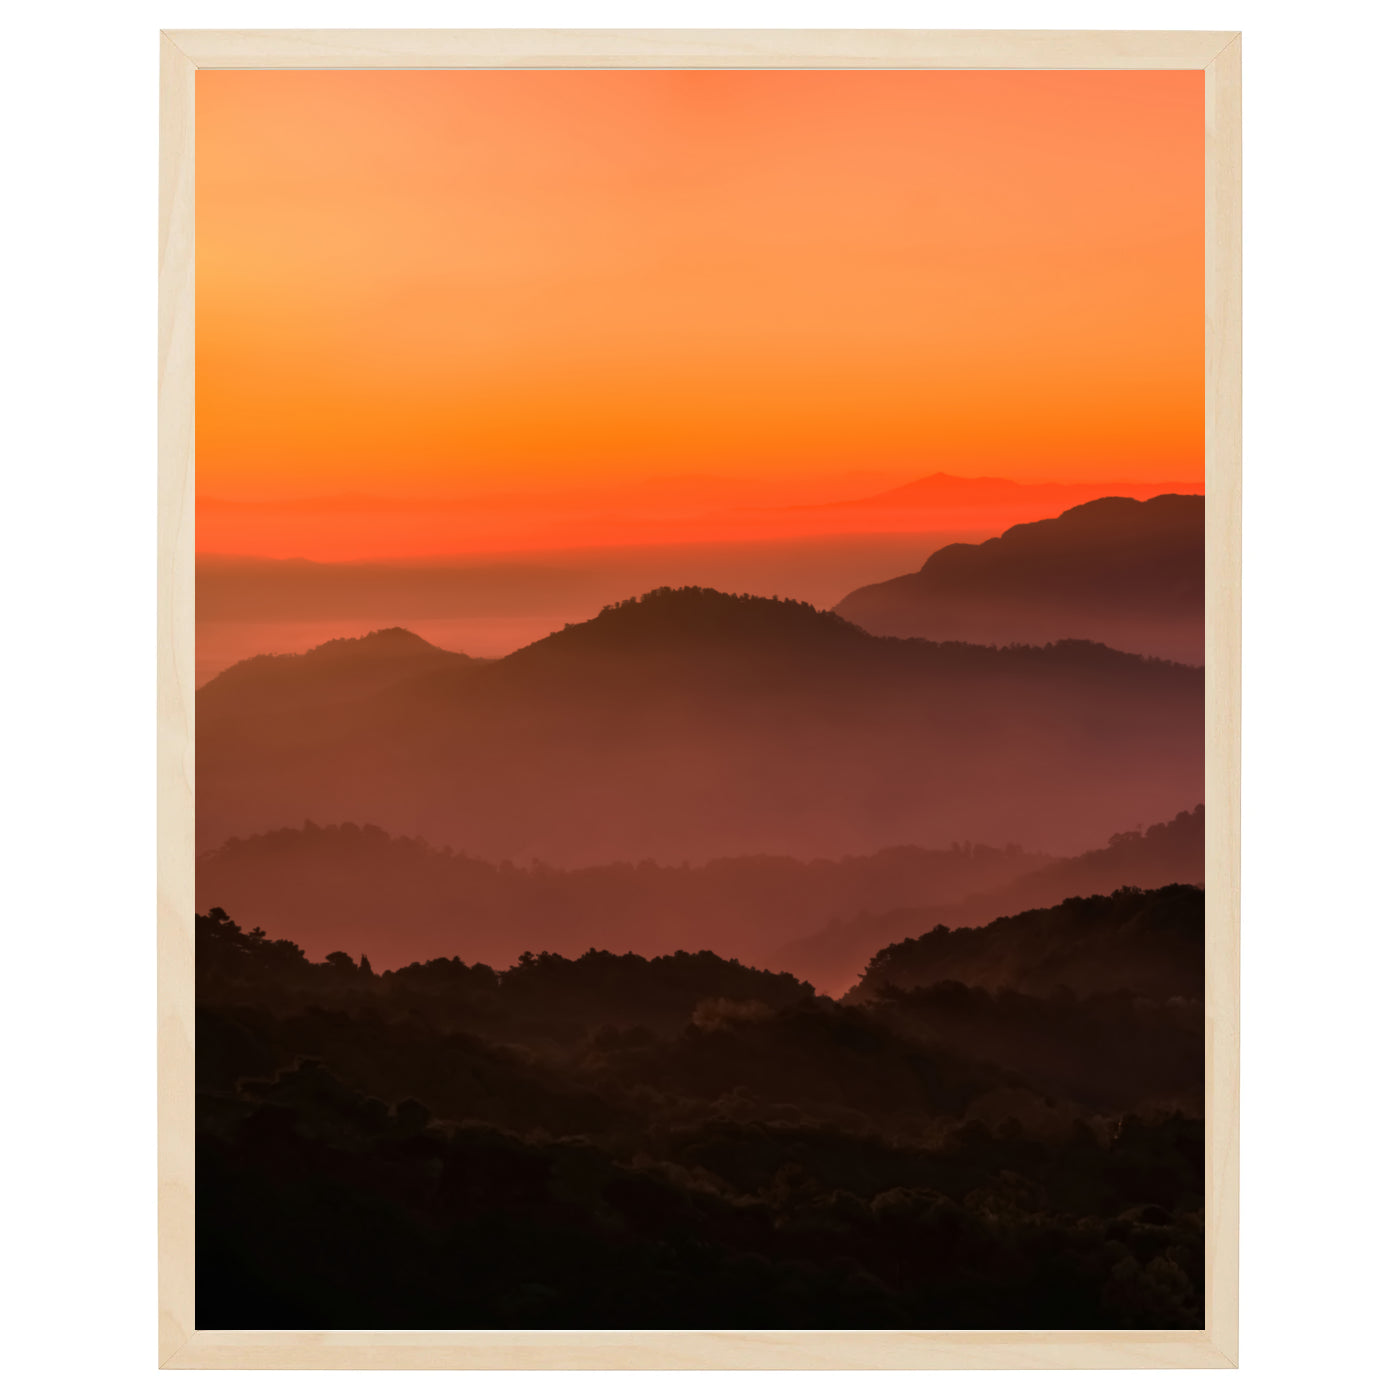 En betagende solnedgang over majestætiske bjerge, med en frodig skov i forgrunden. Farverne er levende og intenst, og skaber en unik stemning i ethvert rum